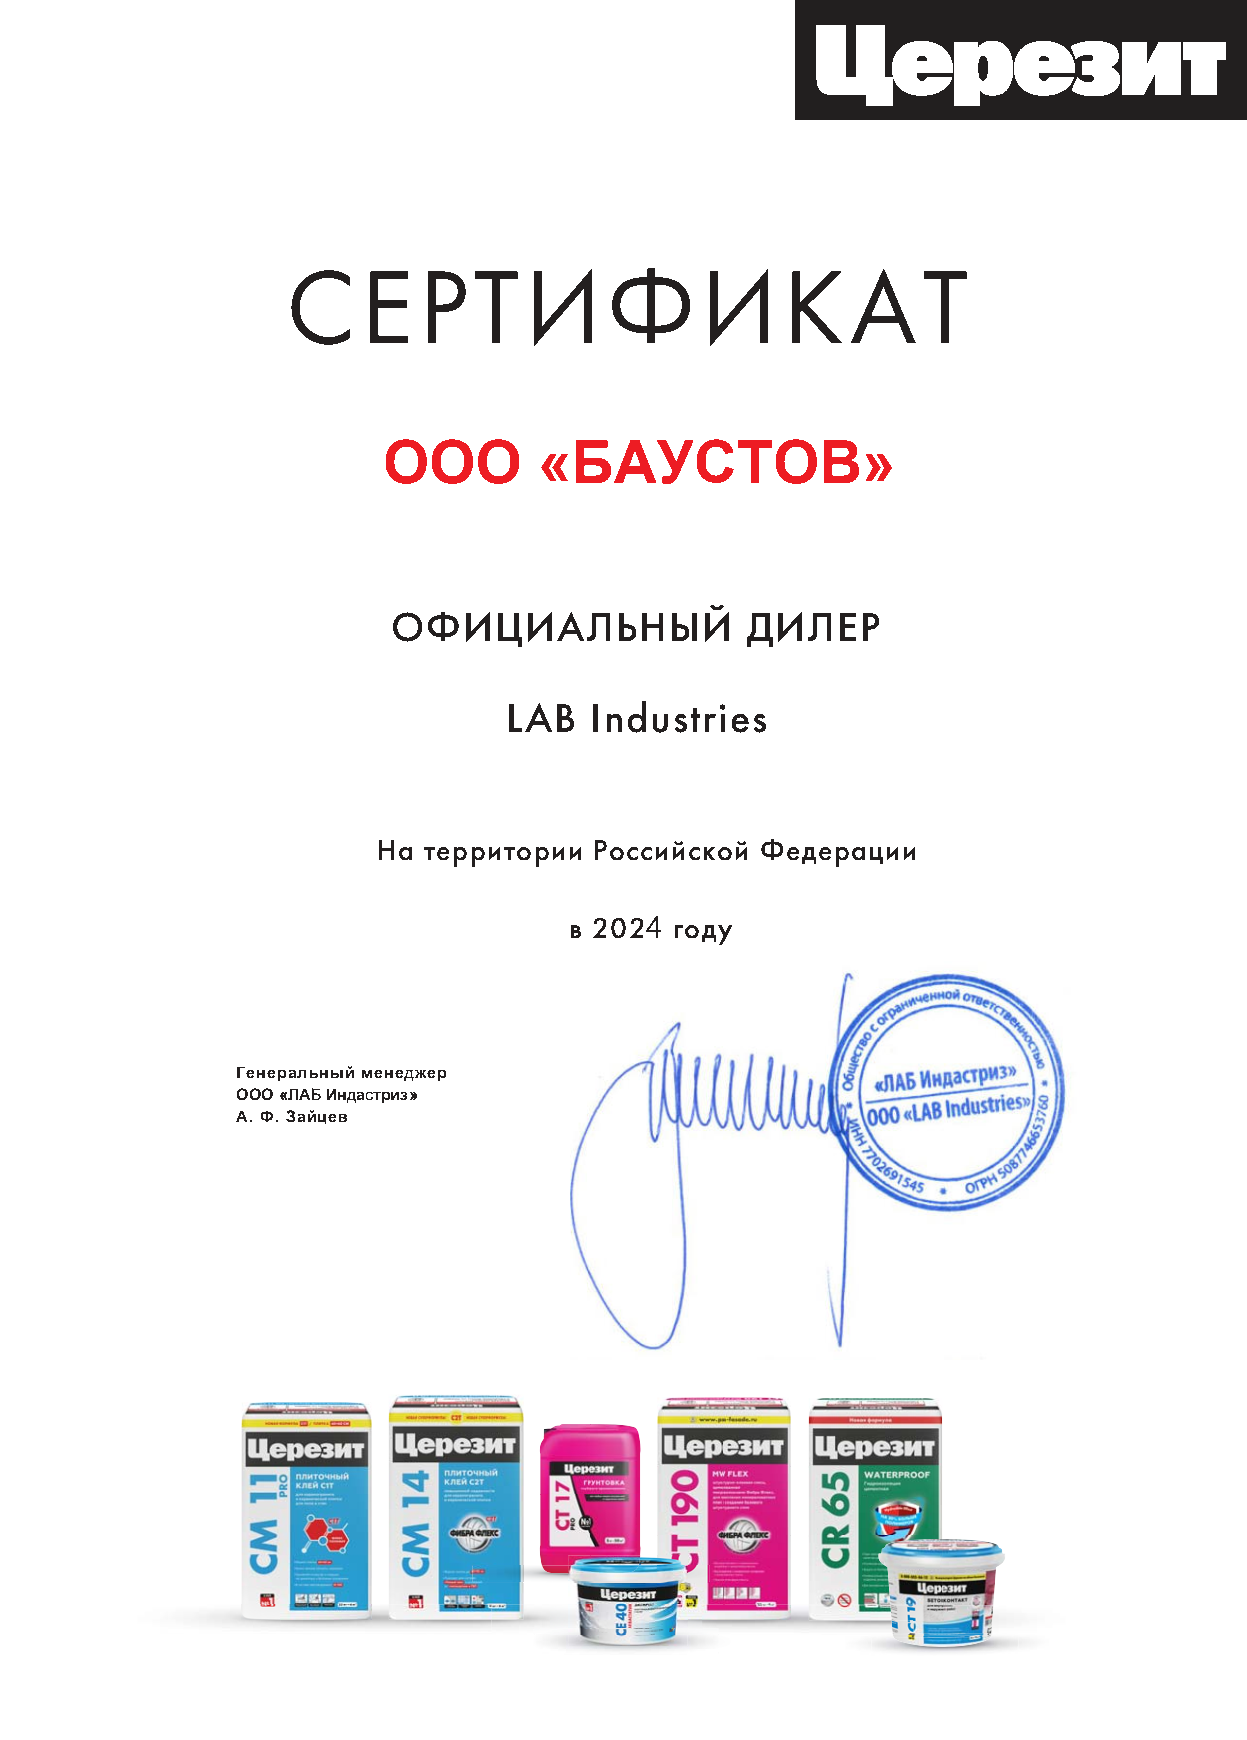 Сертификат Церизит